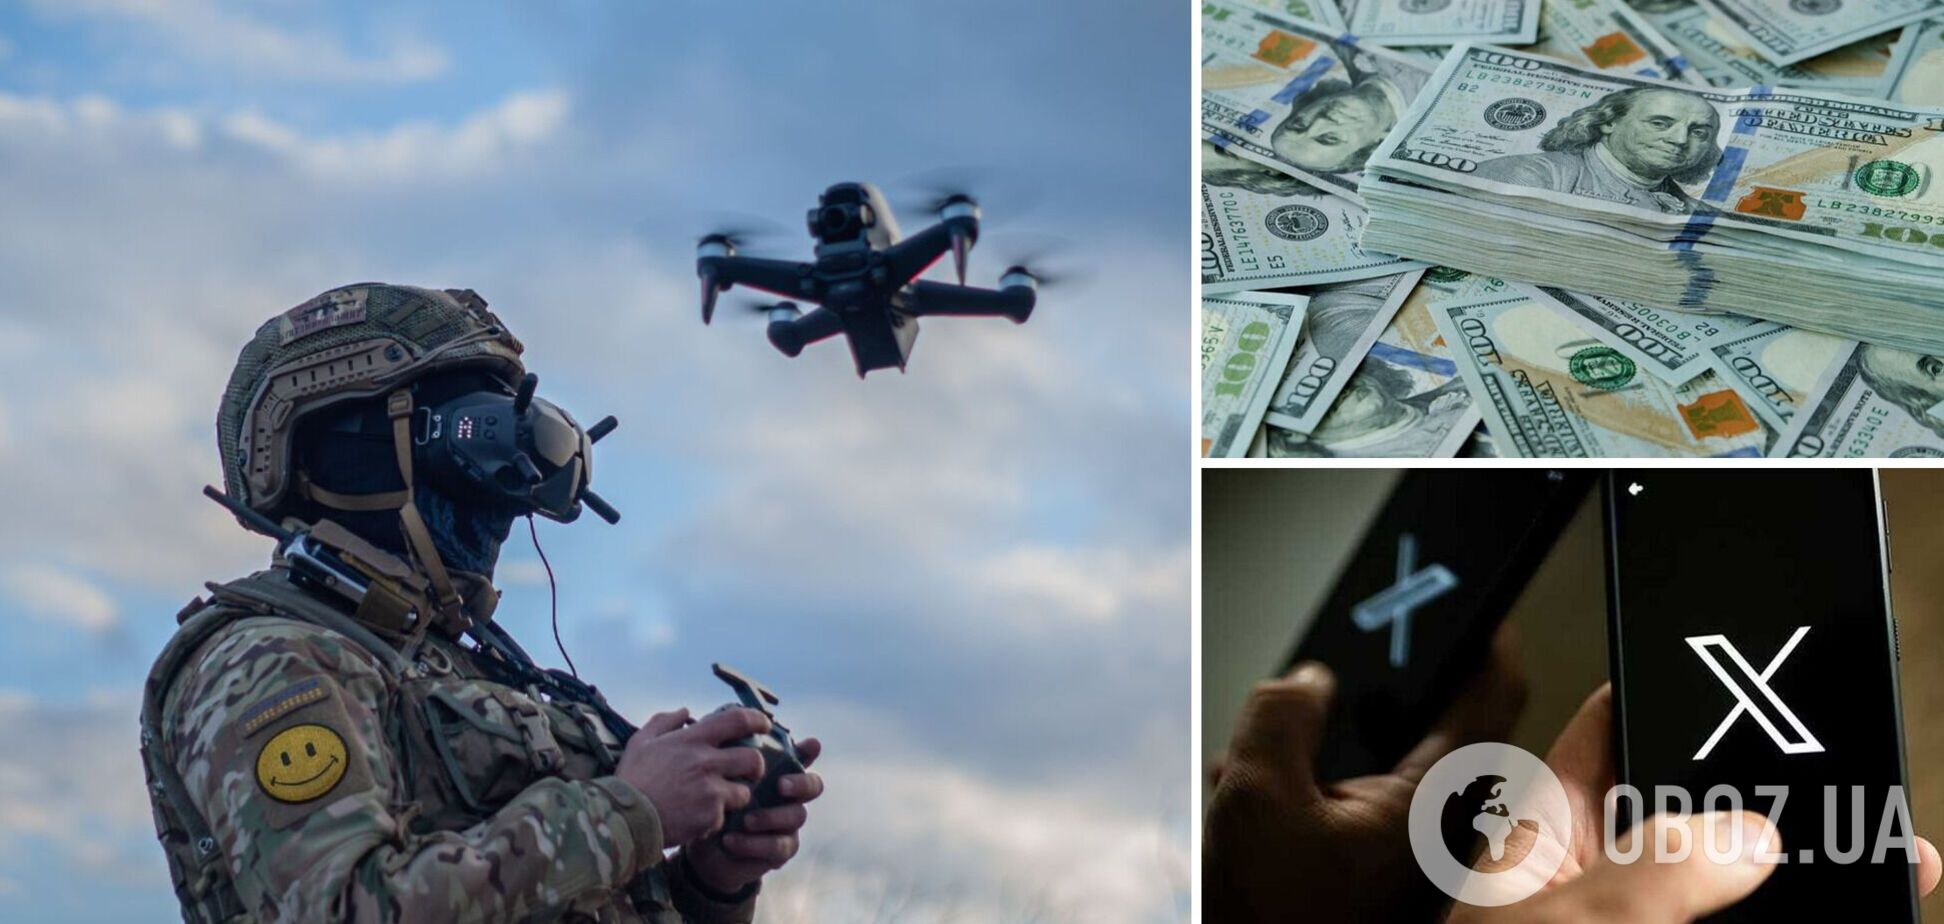 Миллиардер из Чехии задонатит $2 млн на FPV-дроны для Украины за репосты в соцсети: что происходит